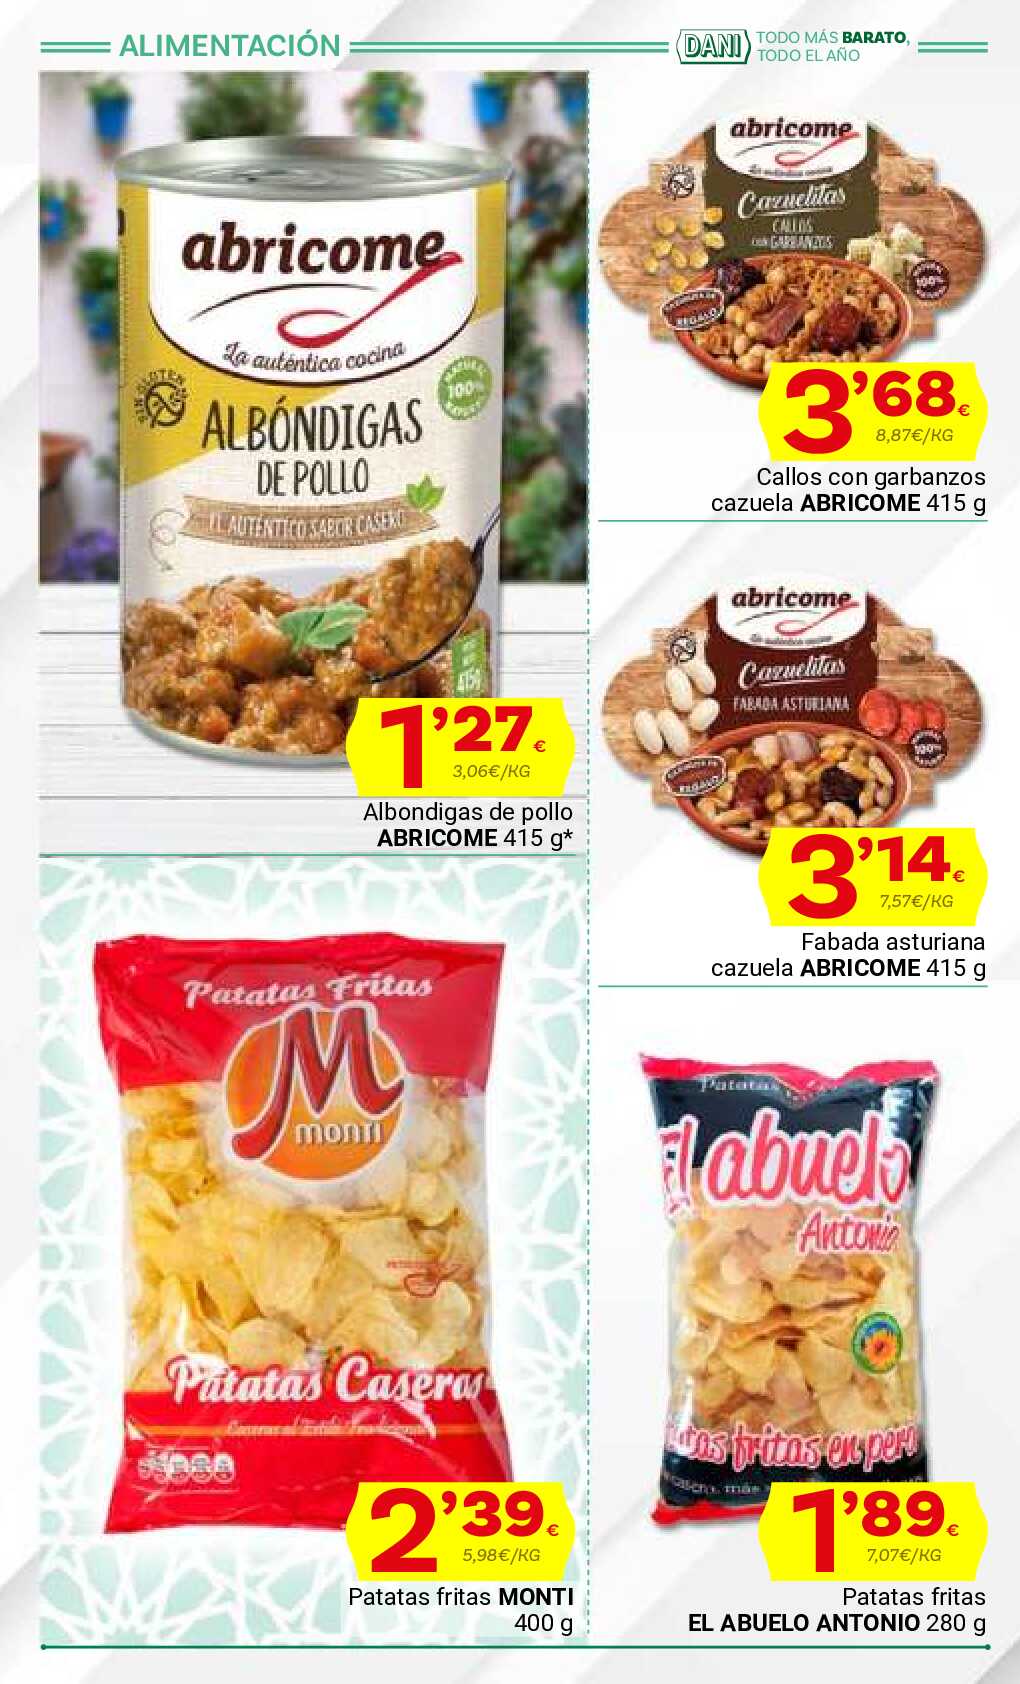 Ofertas con lo mejor de Andalucía Supermercado Dani. Página 24